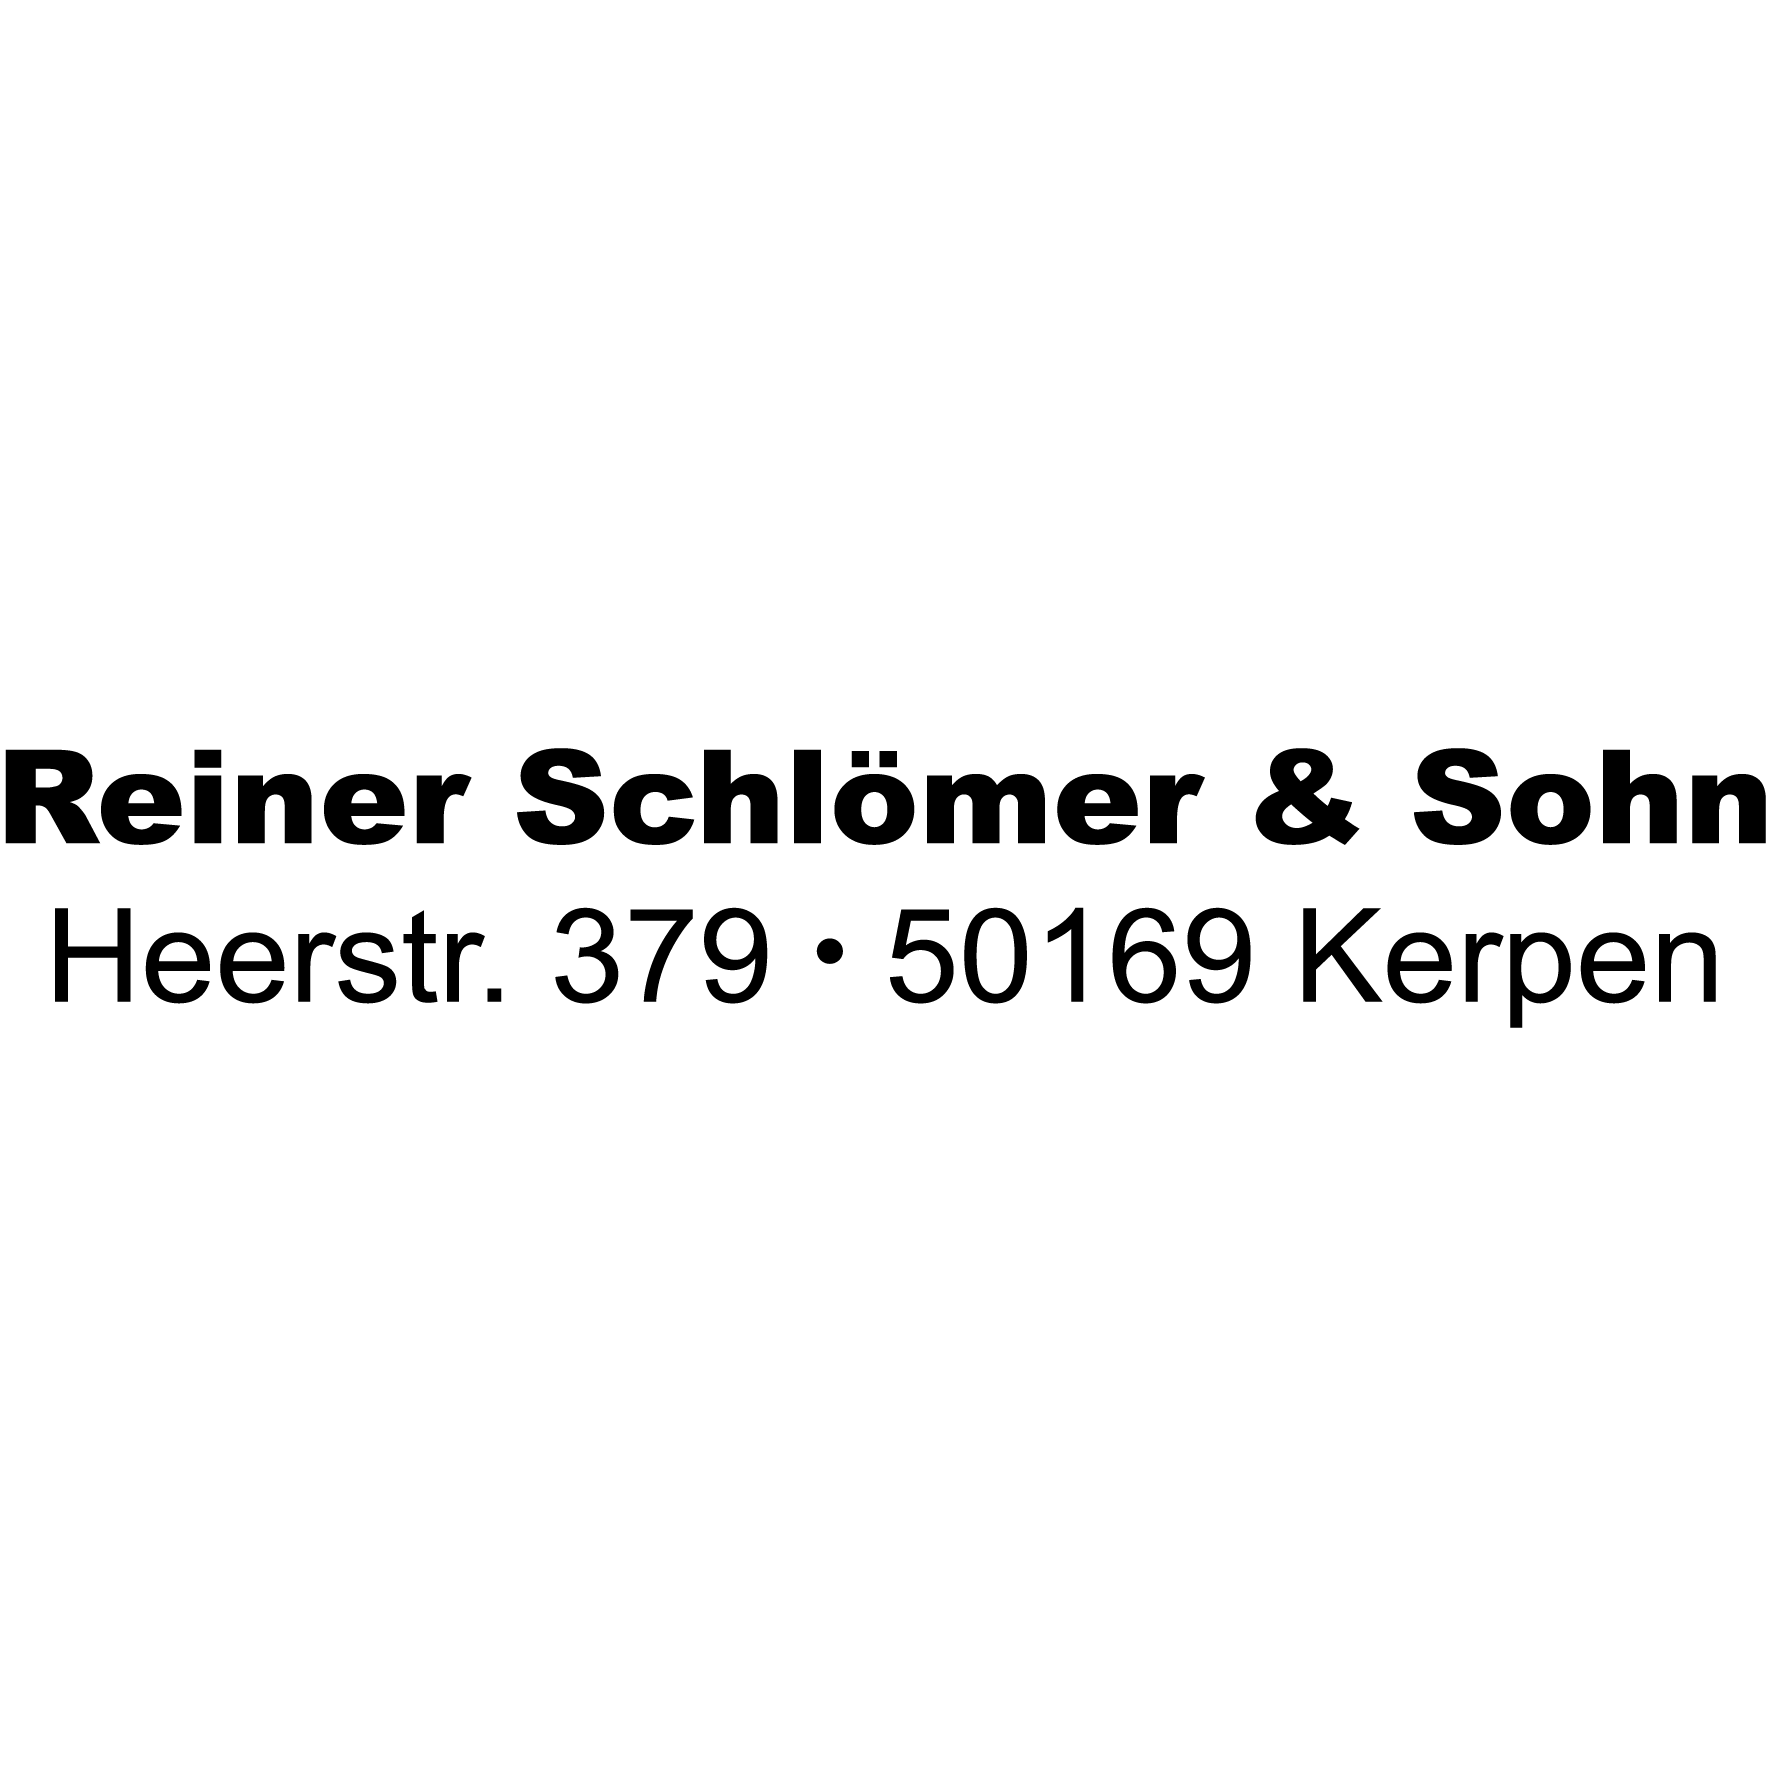 Reiner Schlömer & Sohn in Kerpen im Rheinland - Logo